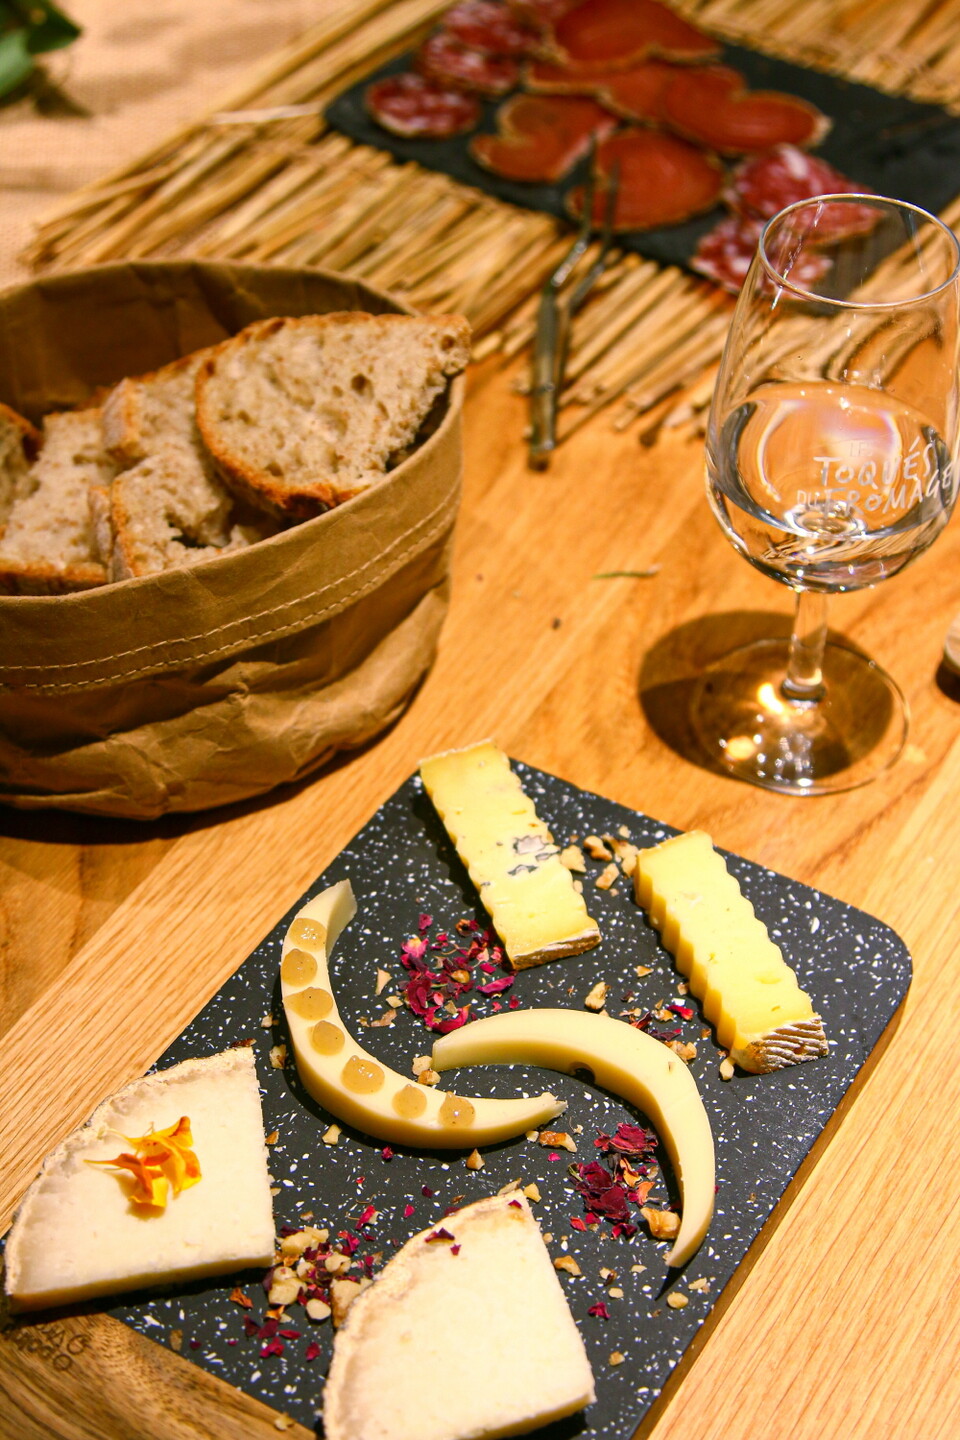 레 토케 뒤 프로마주(Les Toqués du fromage) / 치즈마다 어울리는 와인은 따로 있다. 리옹에서는 치즈와 와인 페어링을 탐험해 보는 시간을 가져 보자